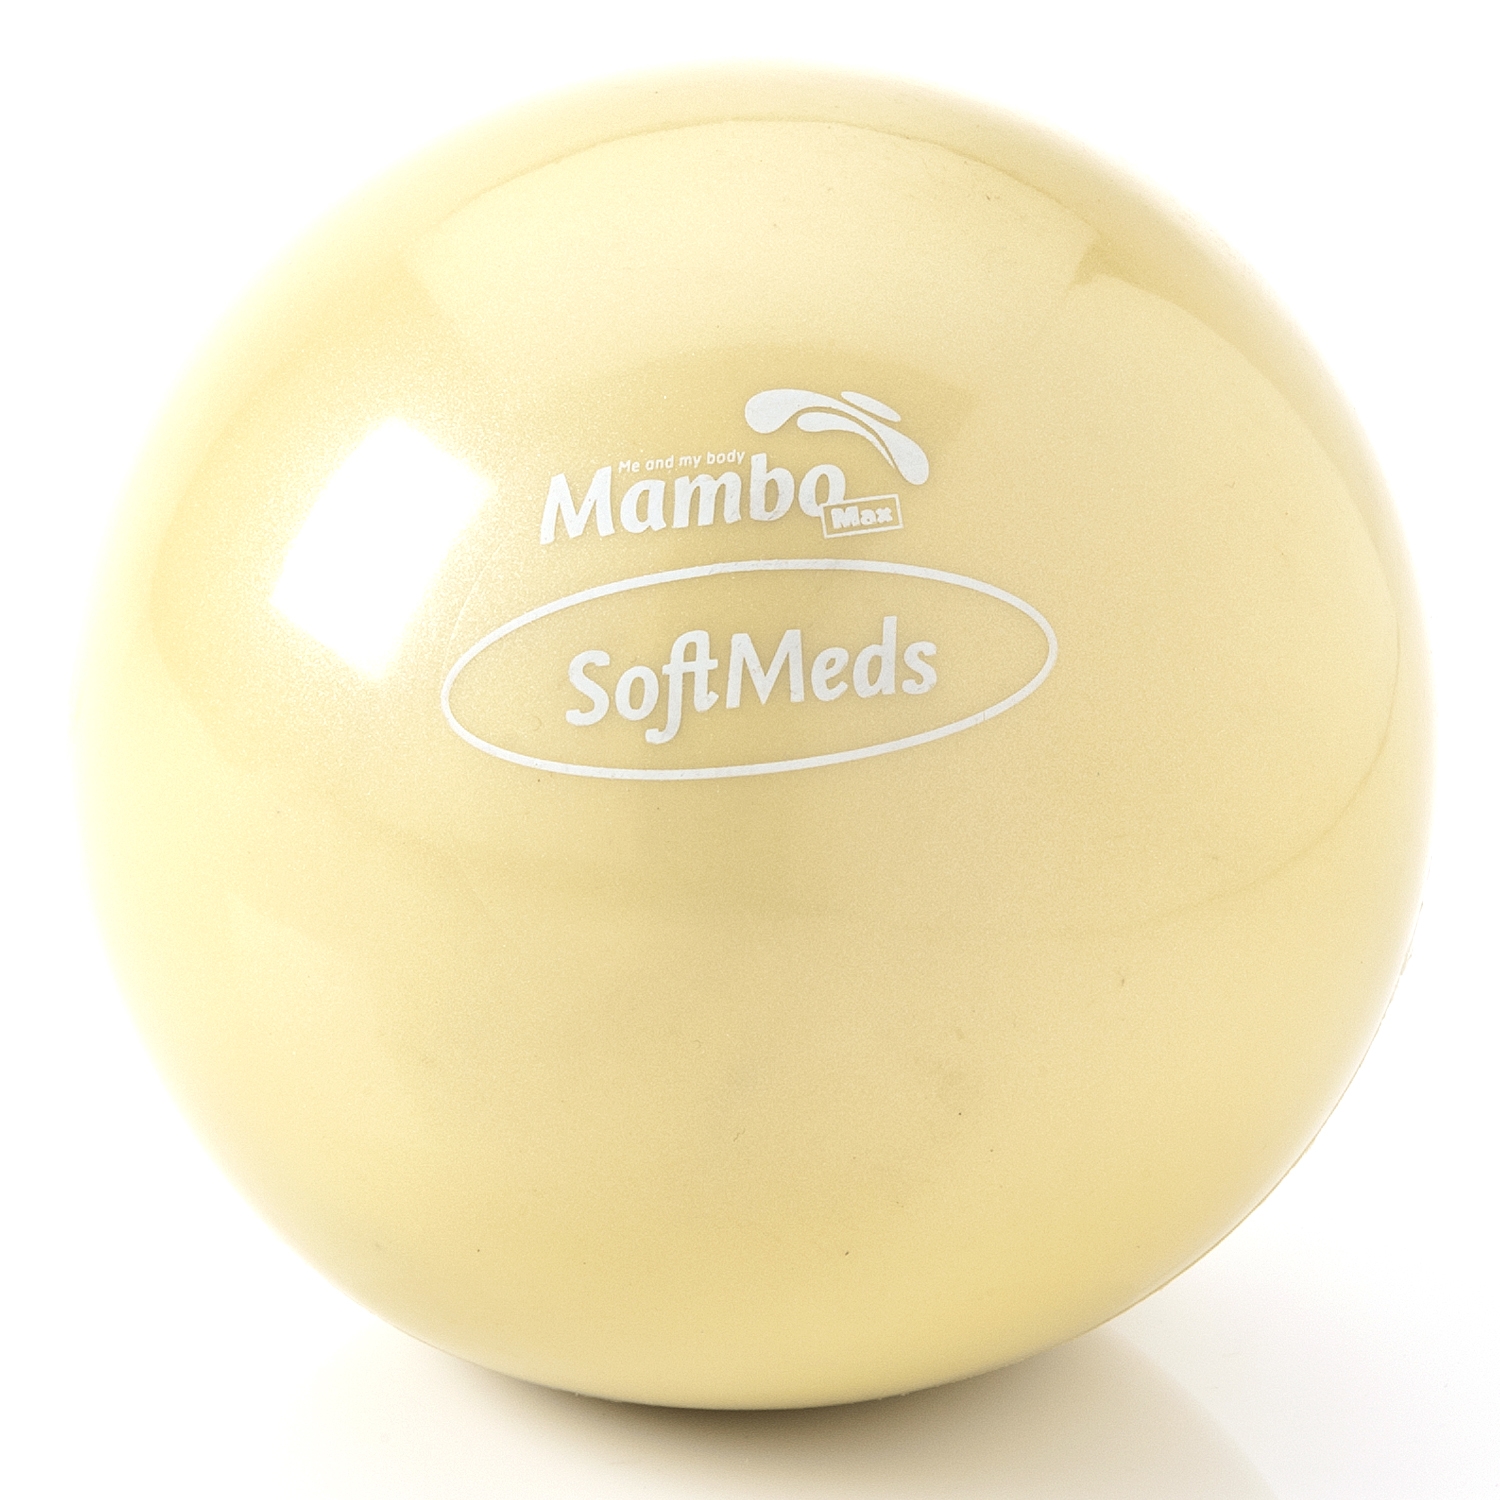 Softmed balle de poids - Mambo - 0,5 kg - beige